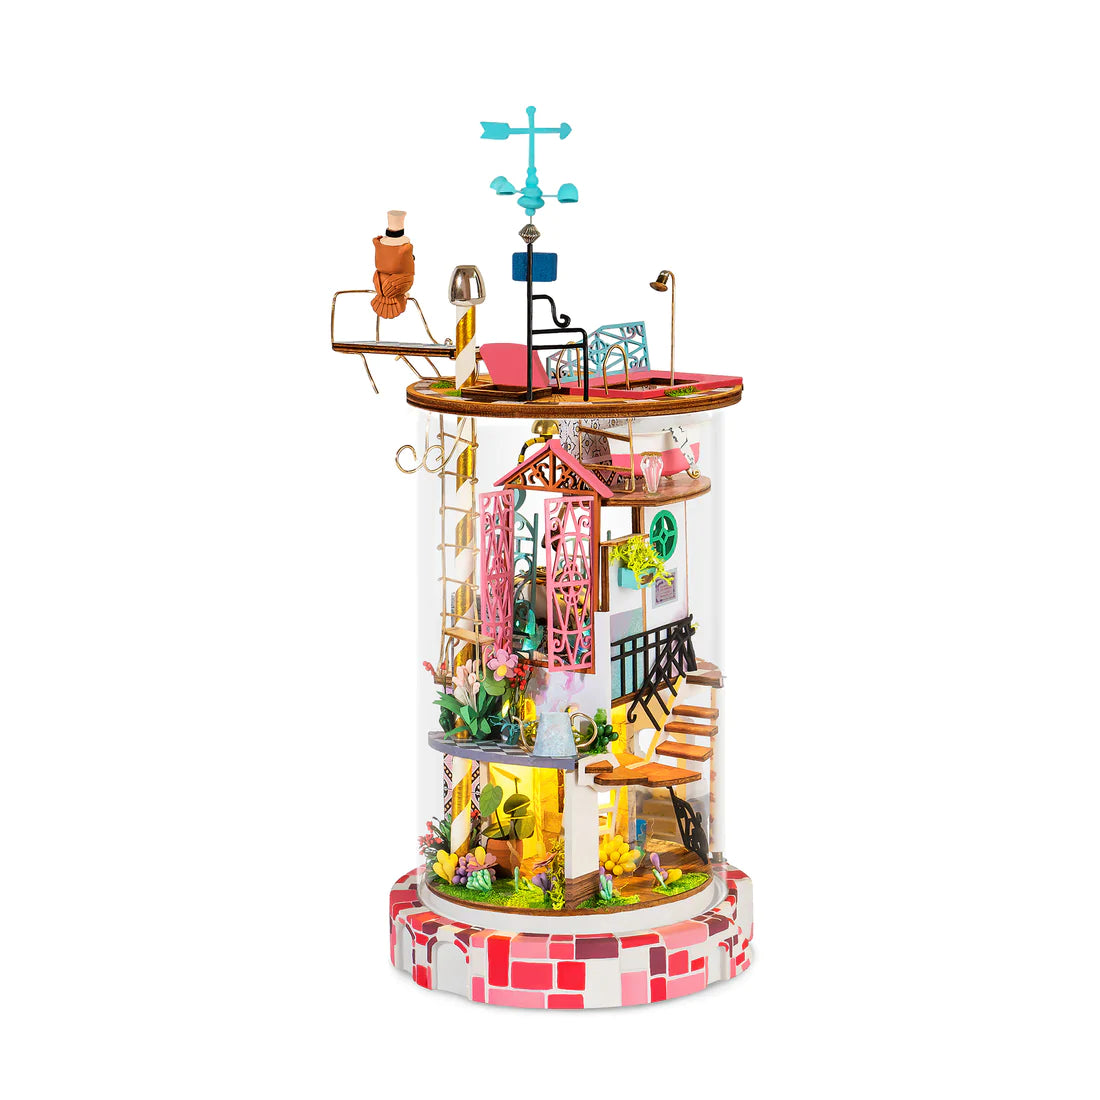 DIY Dollhouse Miniature House Kit | Bloomy House